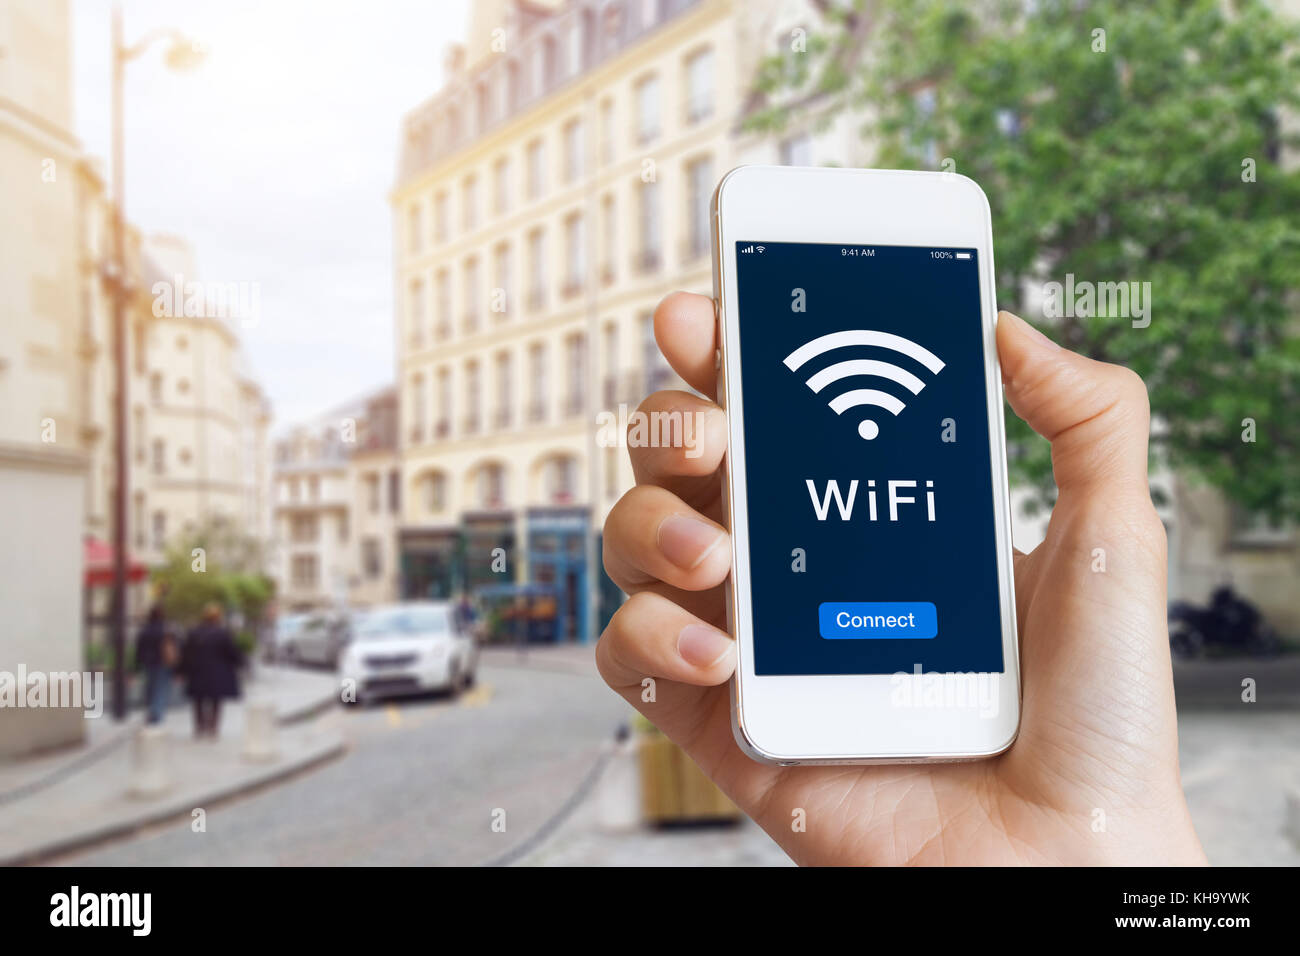 La connessione a hotspot wifi pubblici in città strada per accedere a Internet sullo smartphone, il concetto di tecnologia wireless e viaggi, close-up di mano Foto Stock